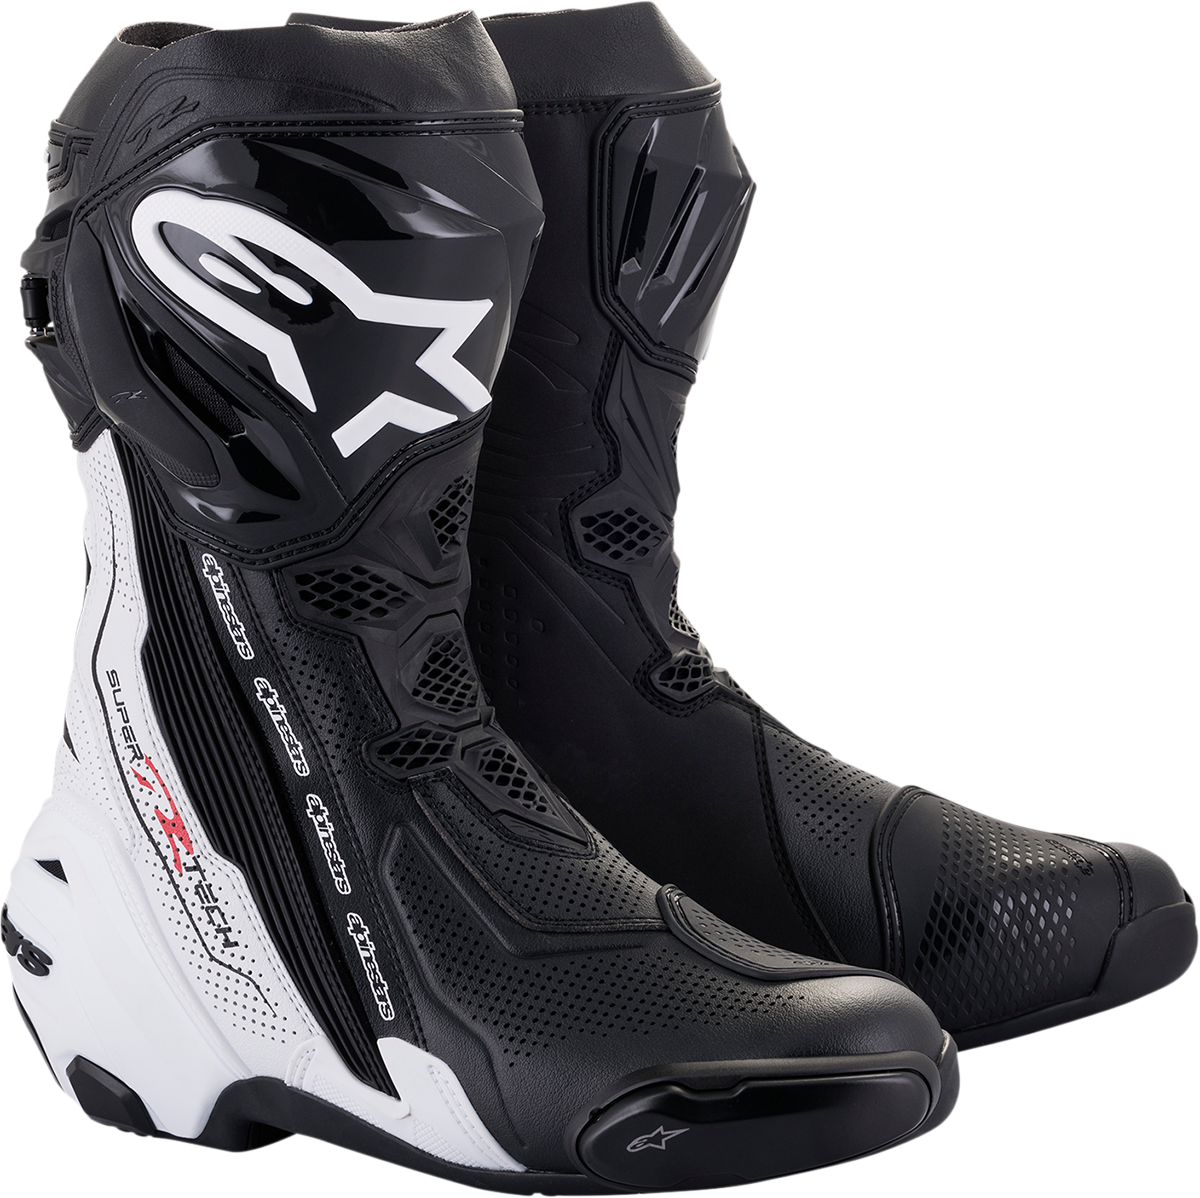 ALPINESTARS Supertech V Boots - Black/White - US 11.5 / EU 46 2220121-12-46